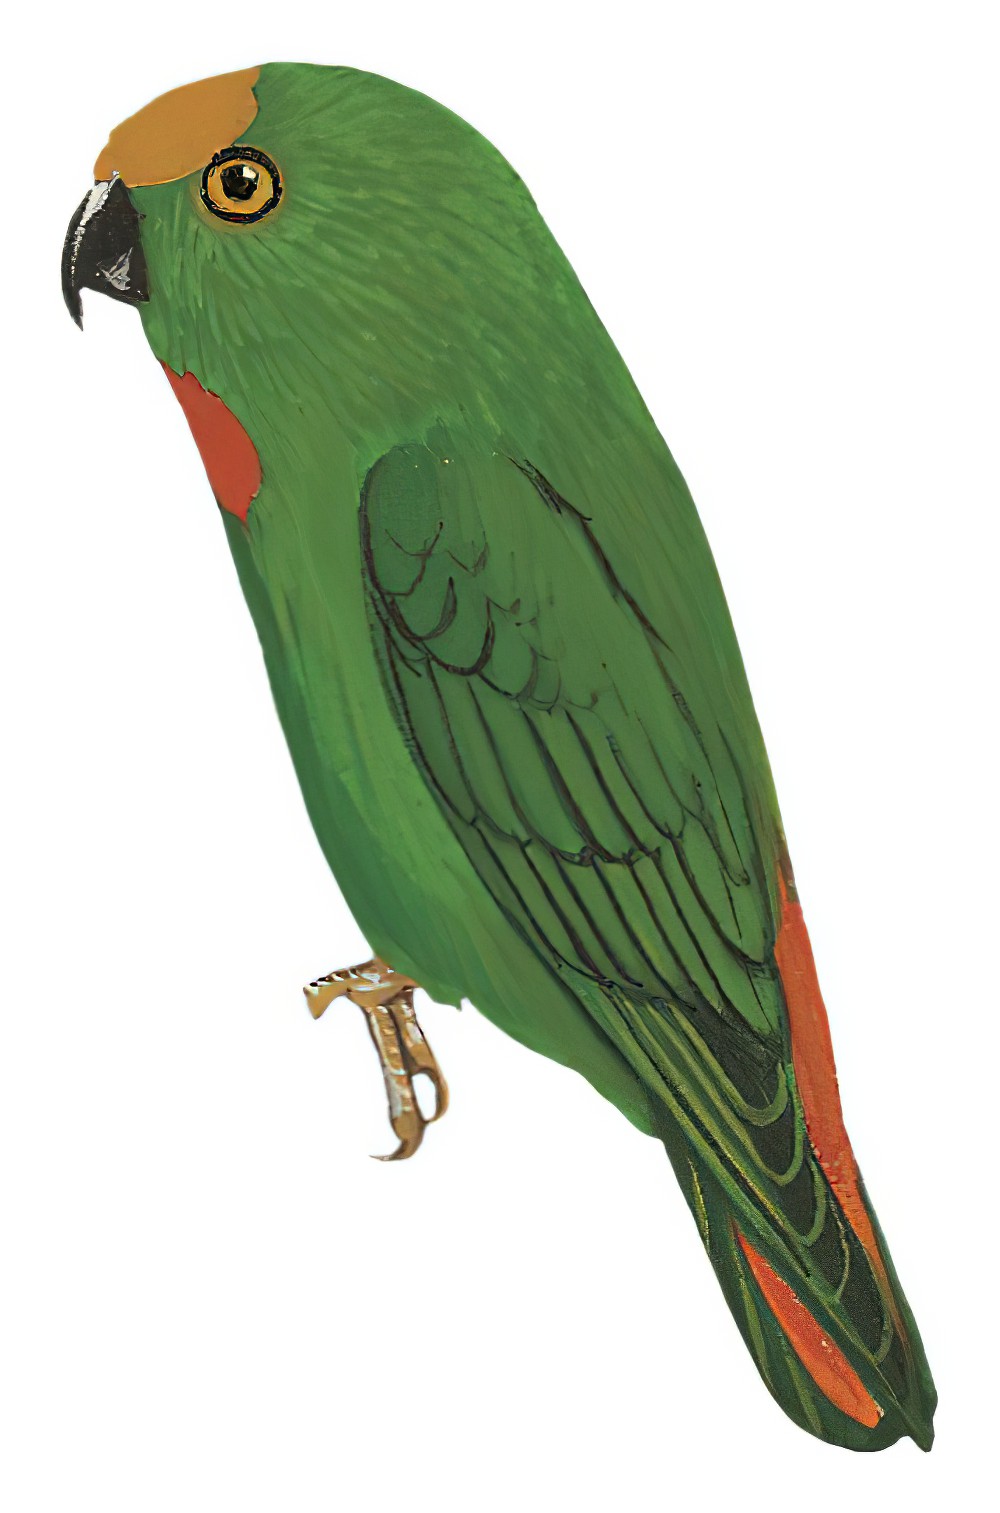 Papuan Hanging-Parrot / Loriculus aurantiifrons